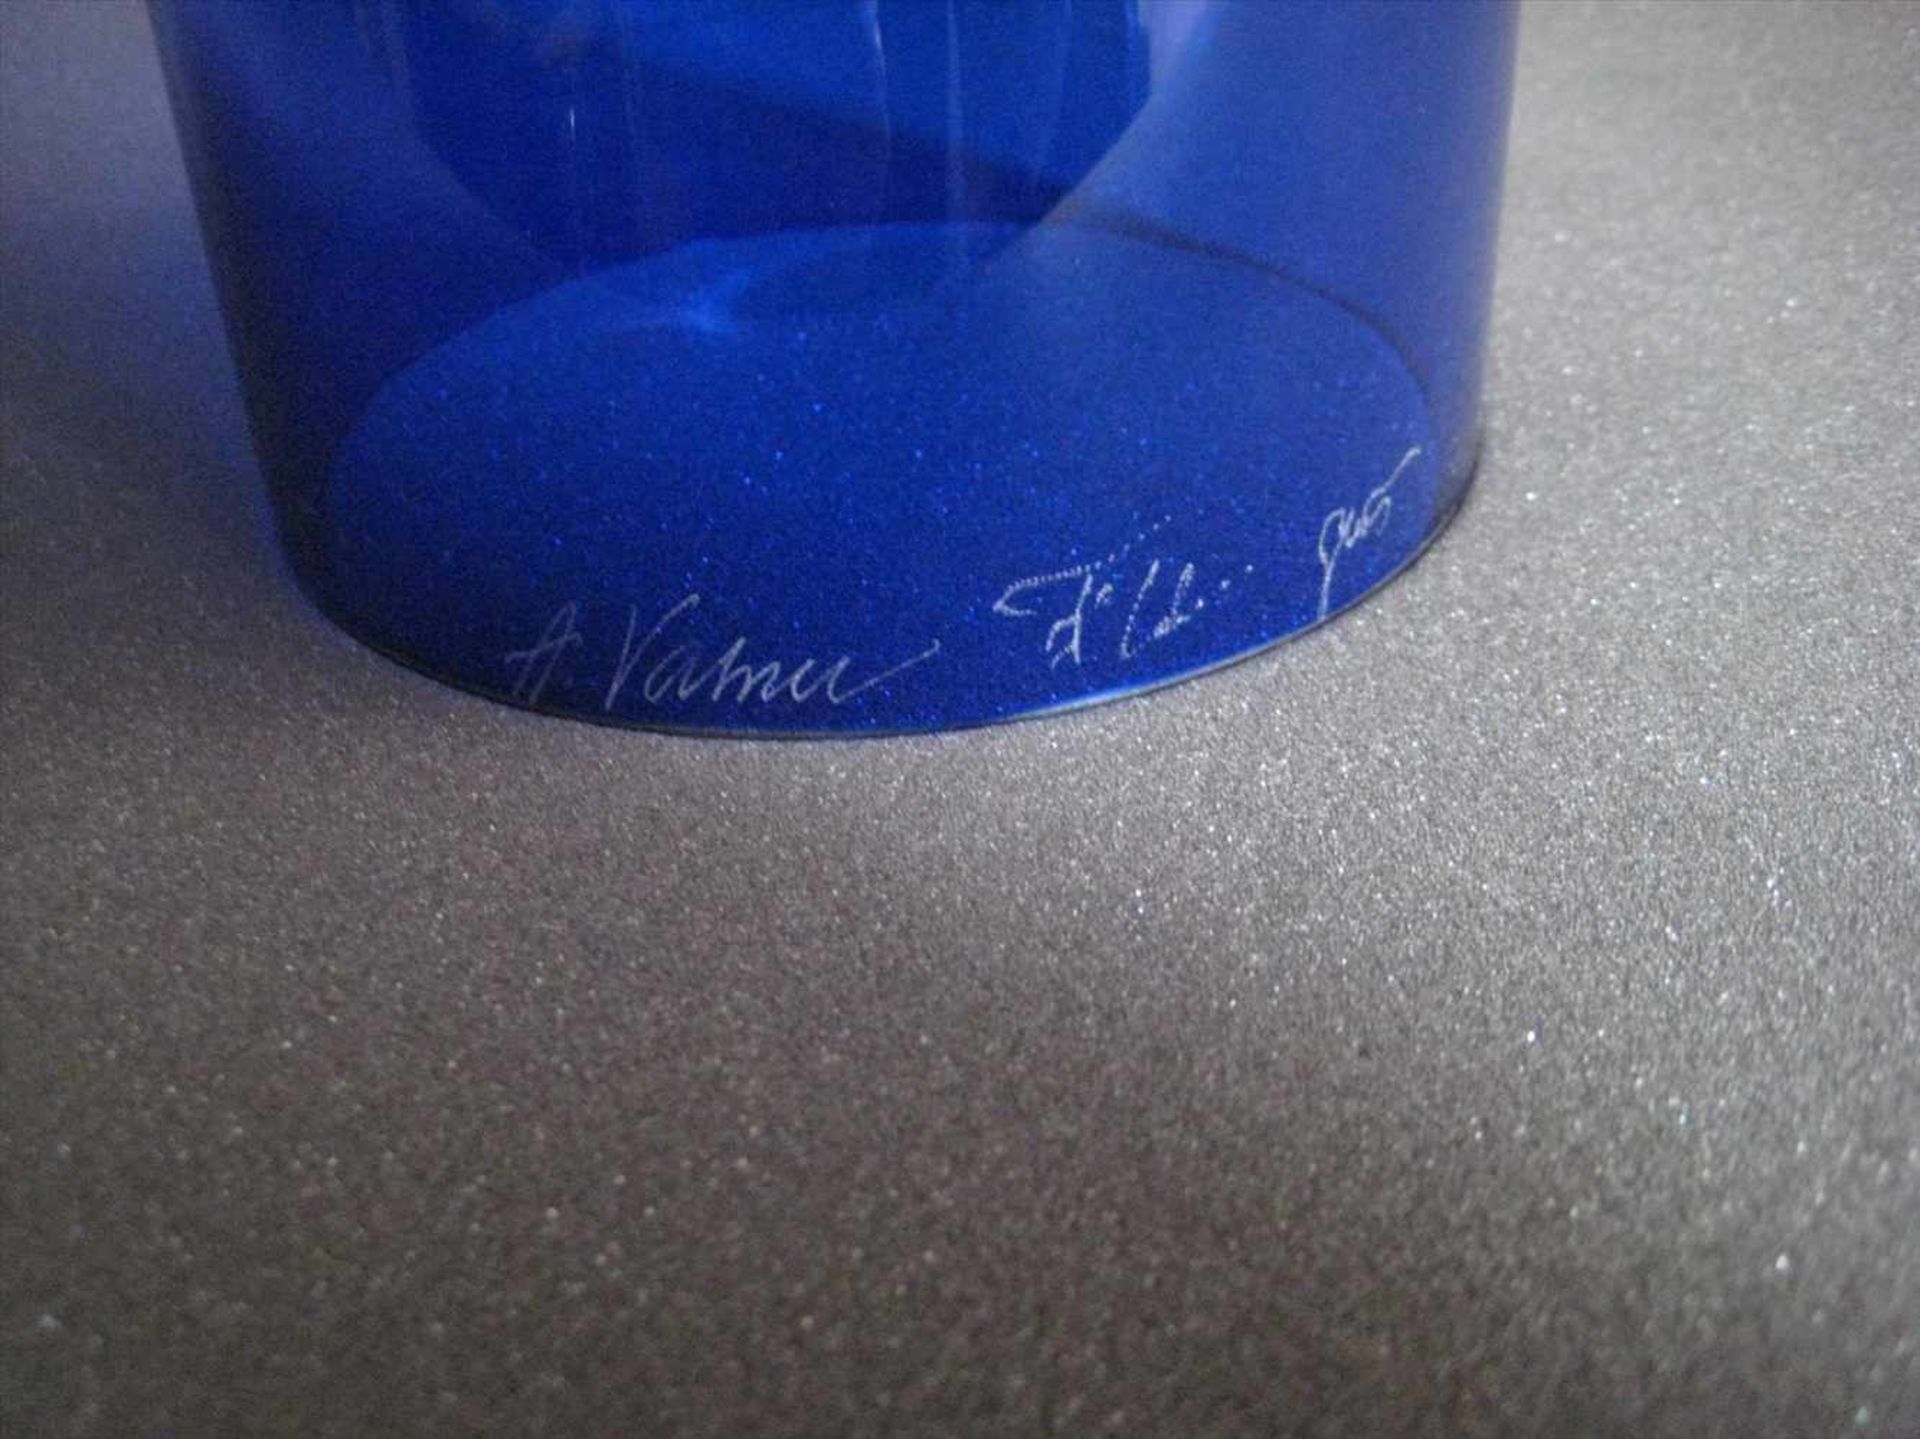 Designer-Vase, sign. A. Vahnu, bläuliches Glas mit gelben Fäden, h 50,5 cm, d 13,5 cm. - Bild 2 aus 2